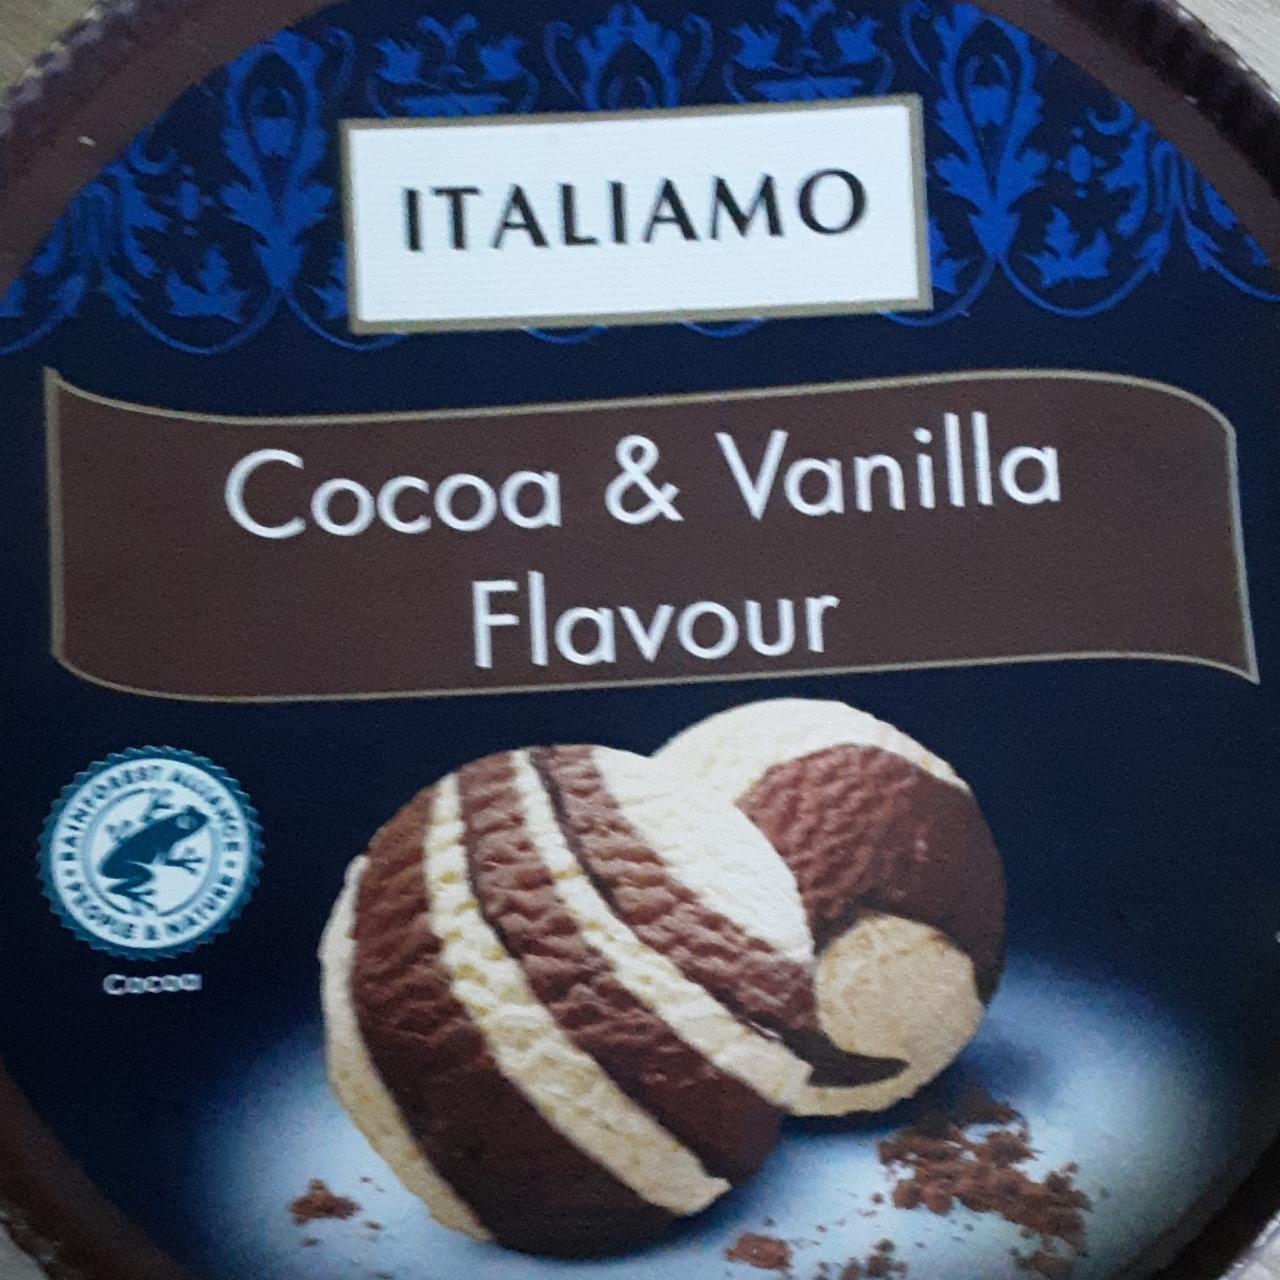 Zdjęcia - italiamo cocoa & vanilla flavour